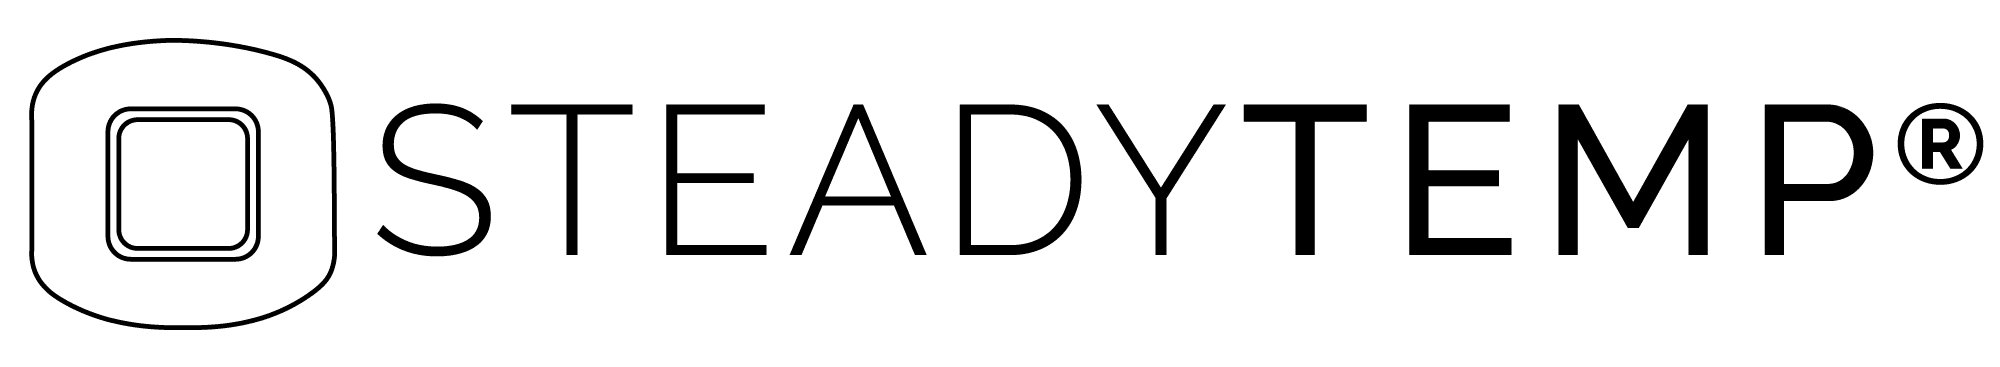 STEADYTEMP® Logo black